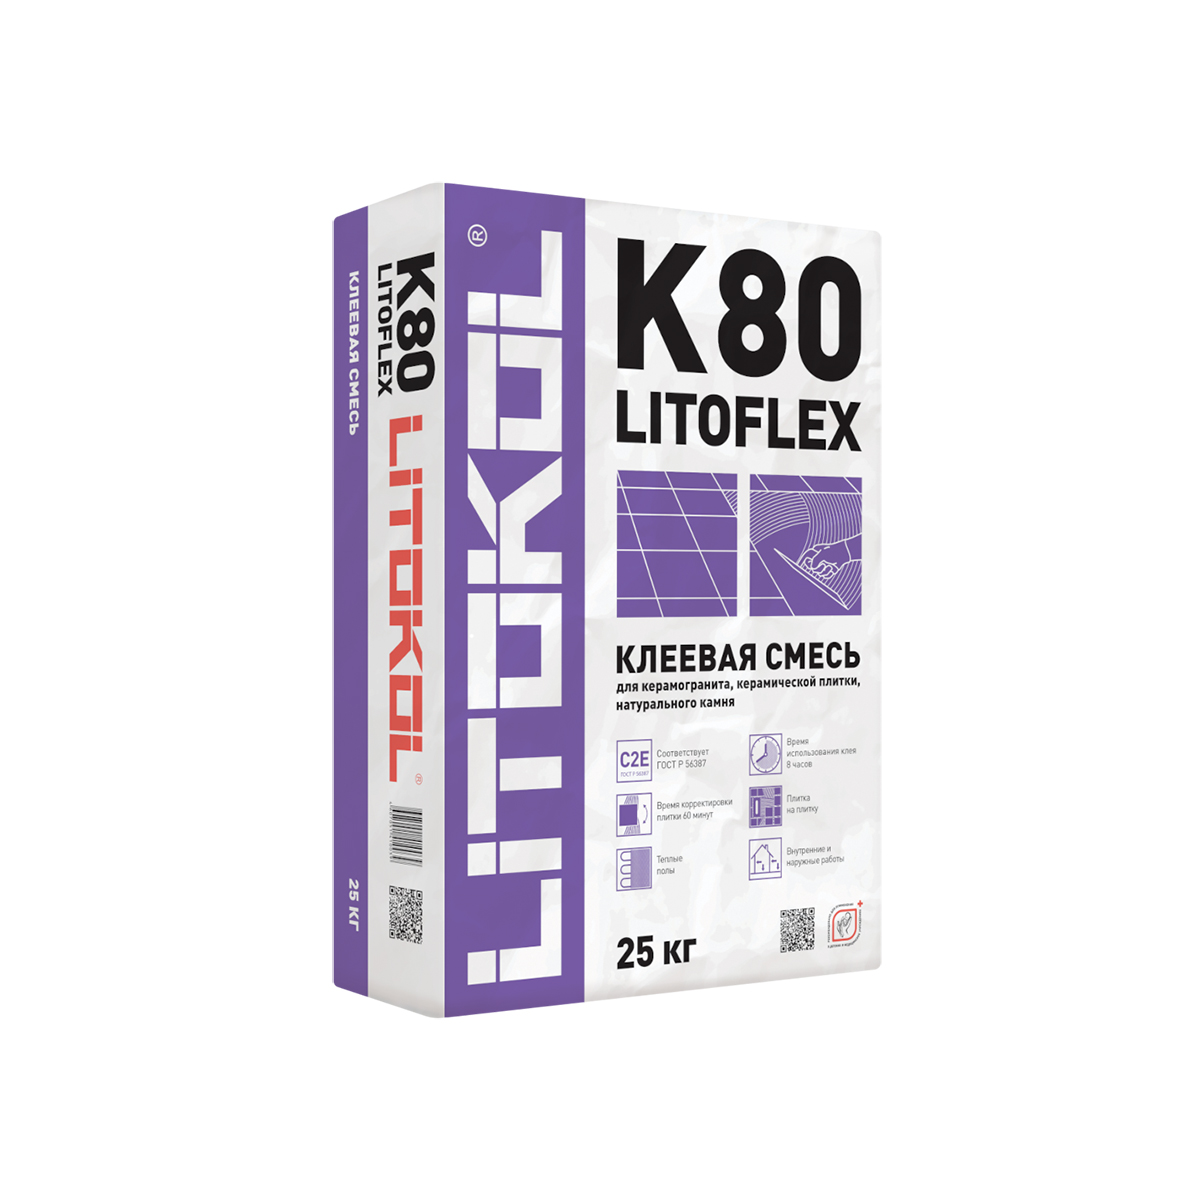 Клей для плитки Litokol Litoflex K80, 25 кг клей для плитки готовый litokol litoacril plus 5 кг